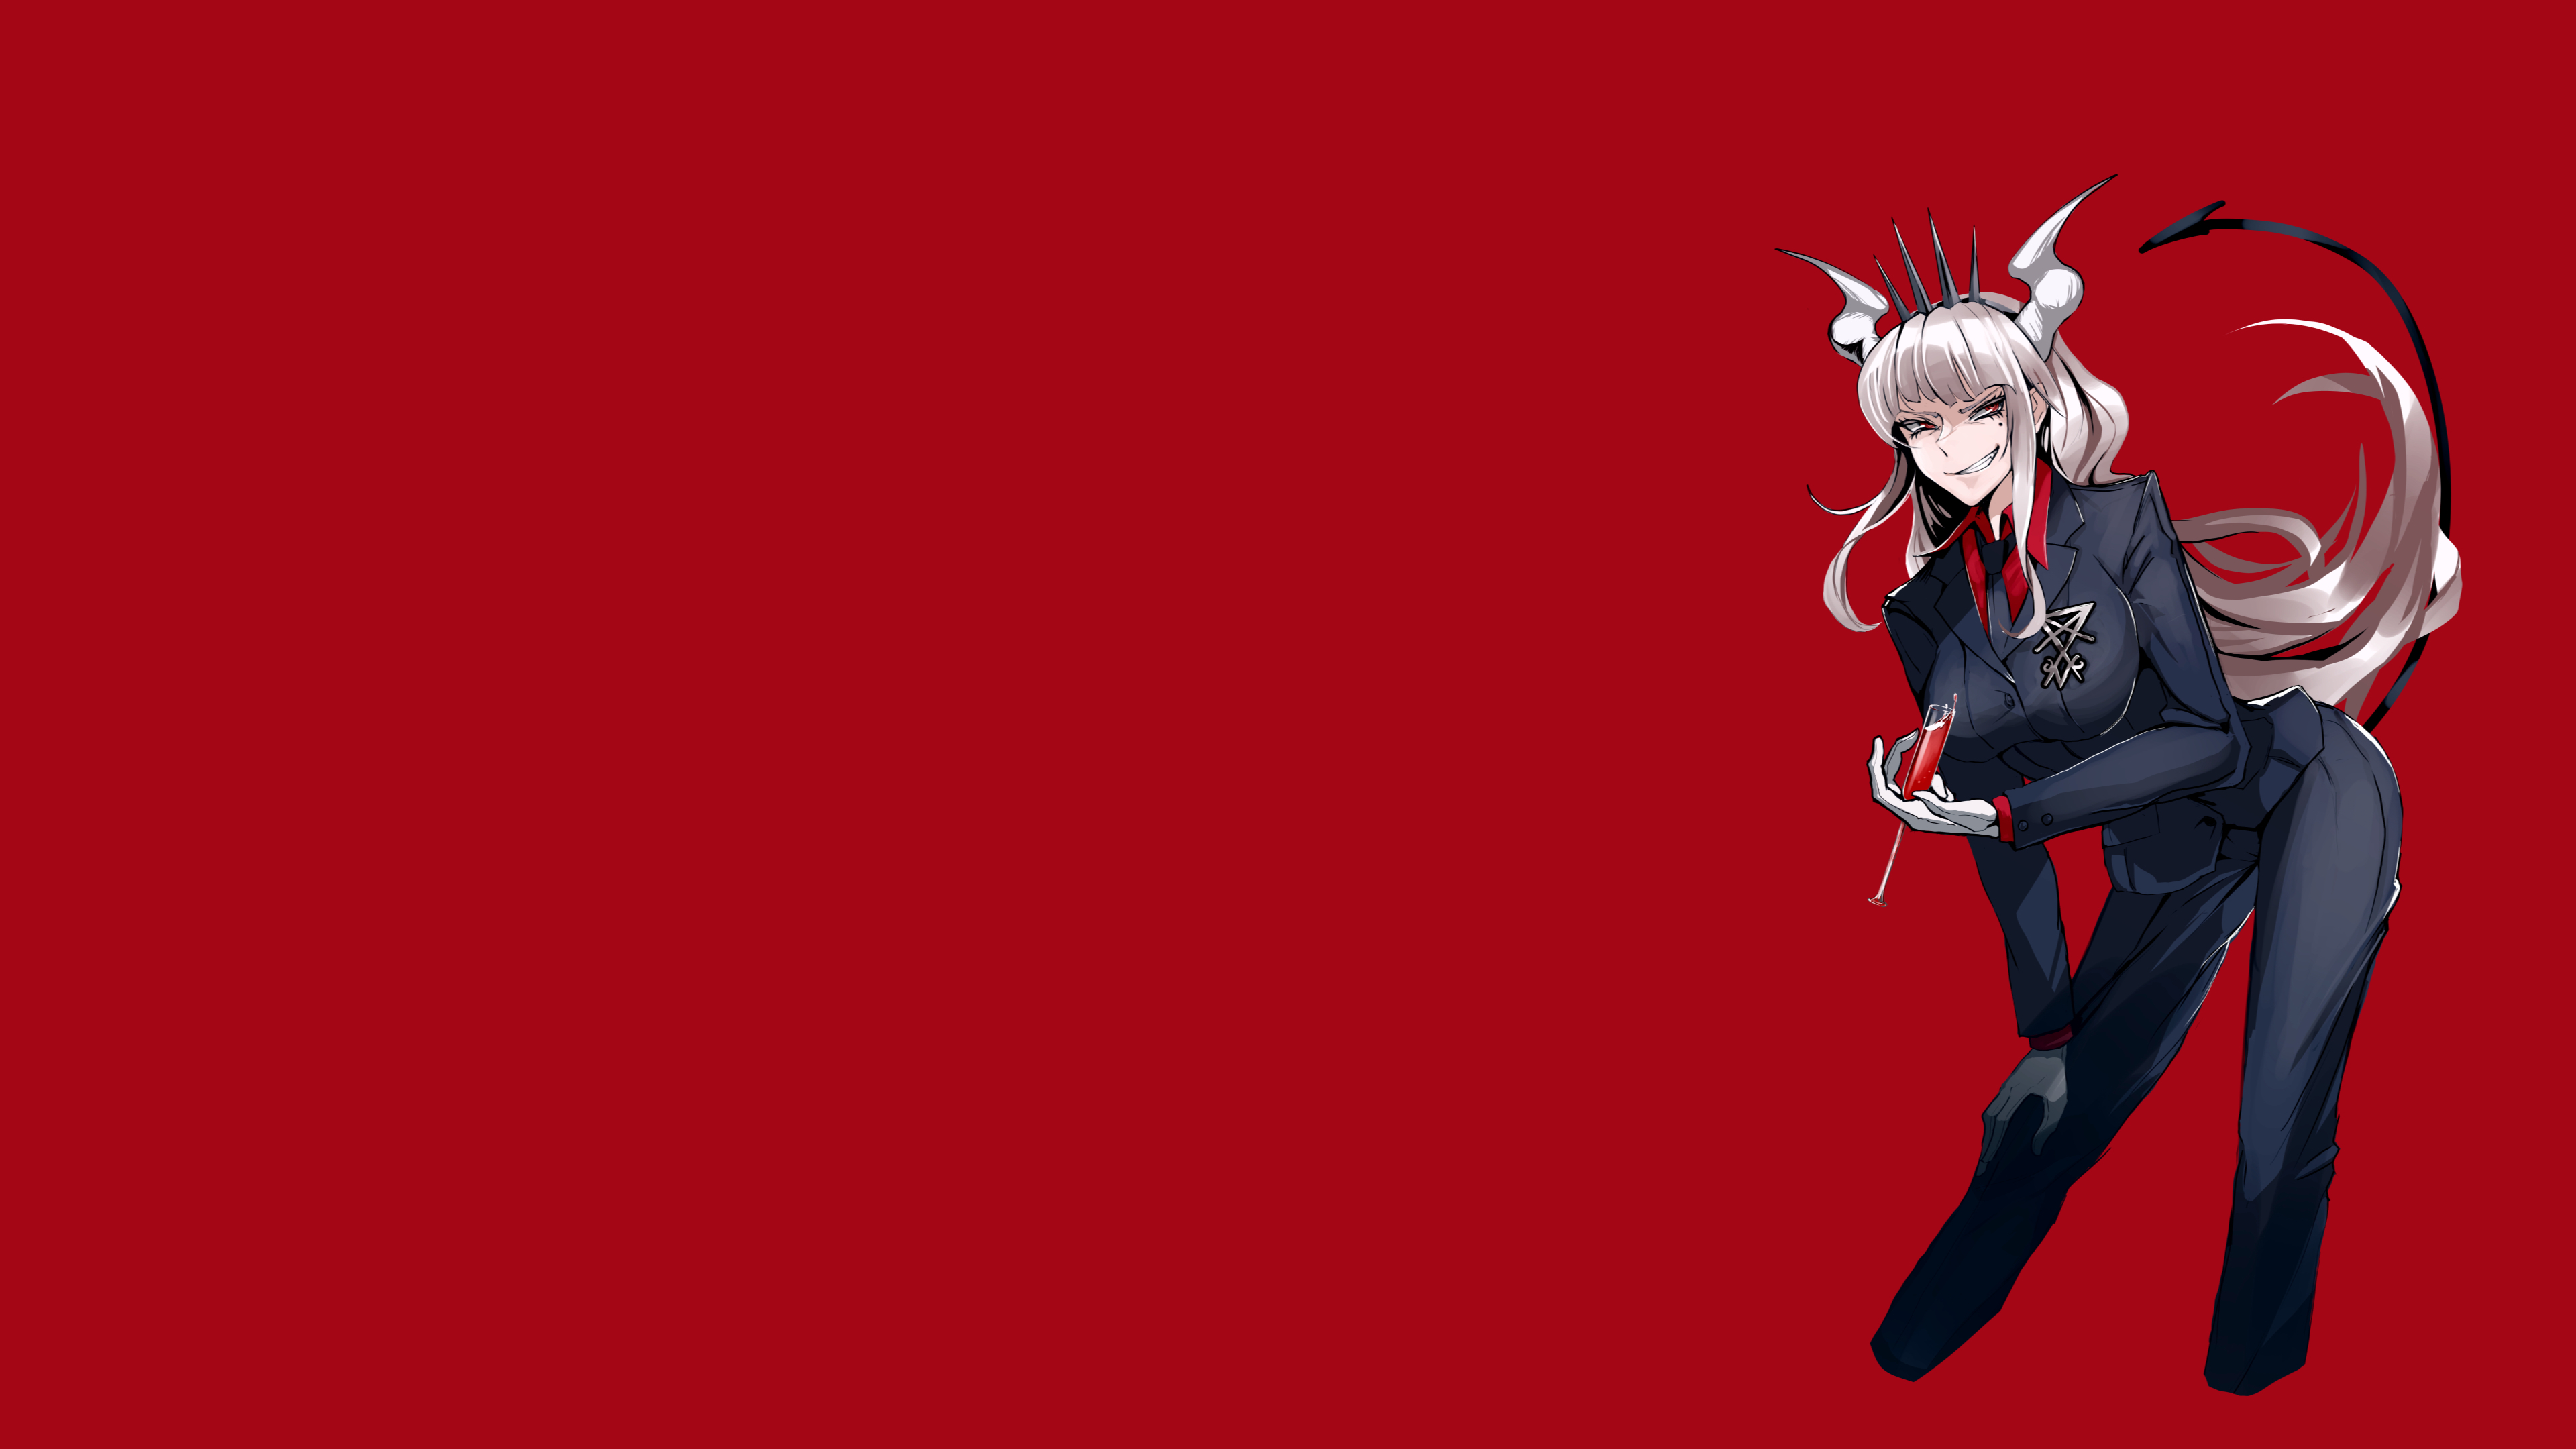 Anime 3840x2160 Helltaker Lucifer (Helltaker) red background demon girls horns tail anime anime girls red